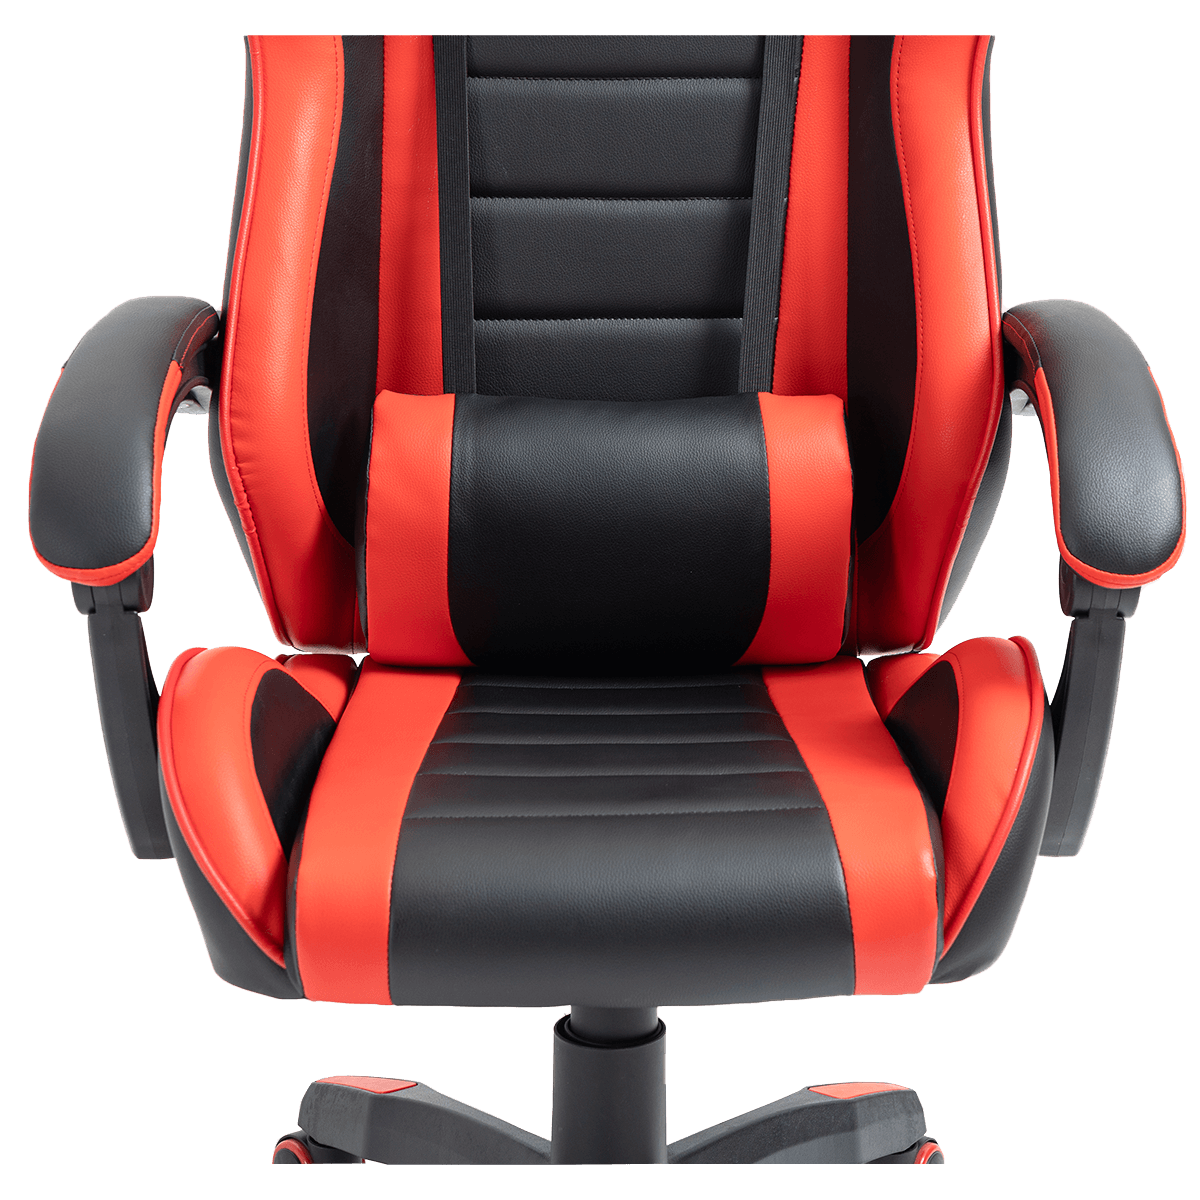 Cadeira Gamer Ninja Armor, Reclinável, 4D, Preto E Vermelho, CGN-ARMOR-PV